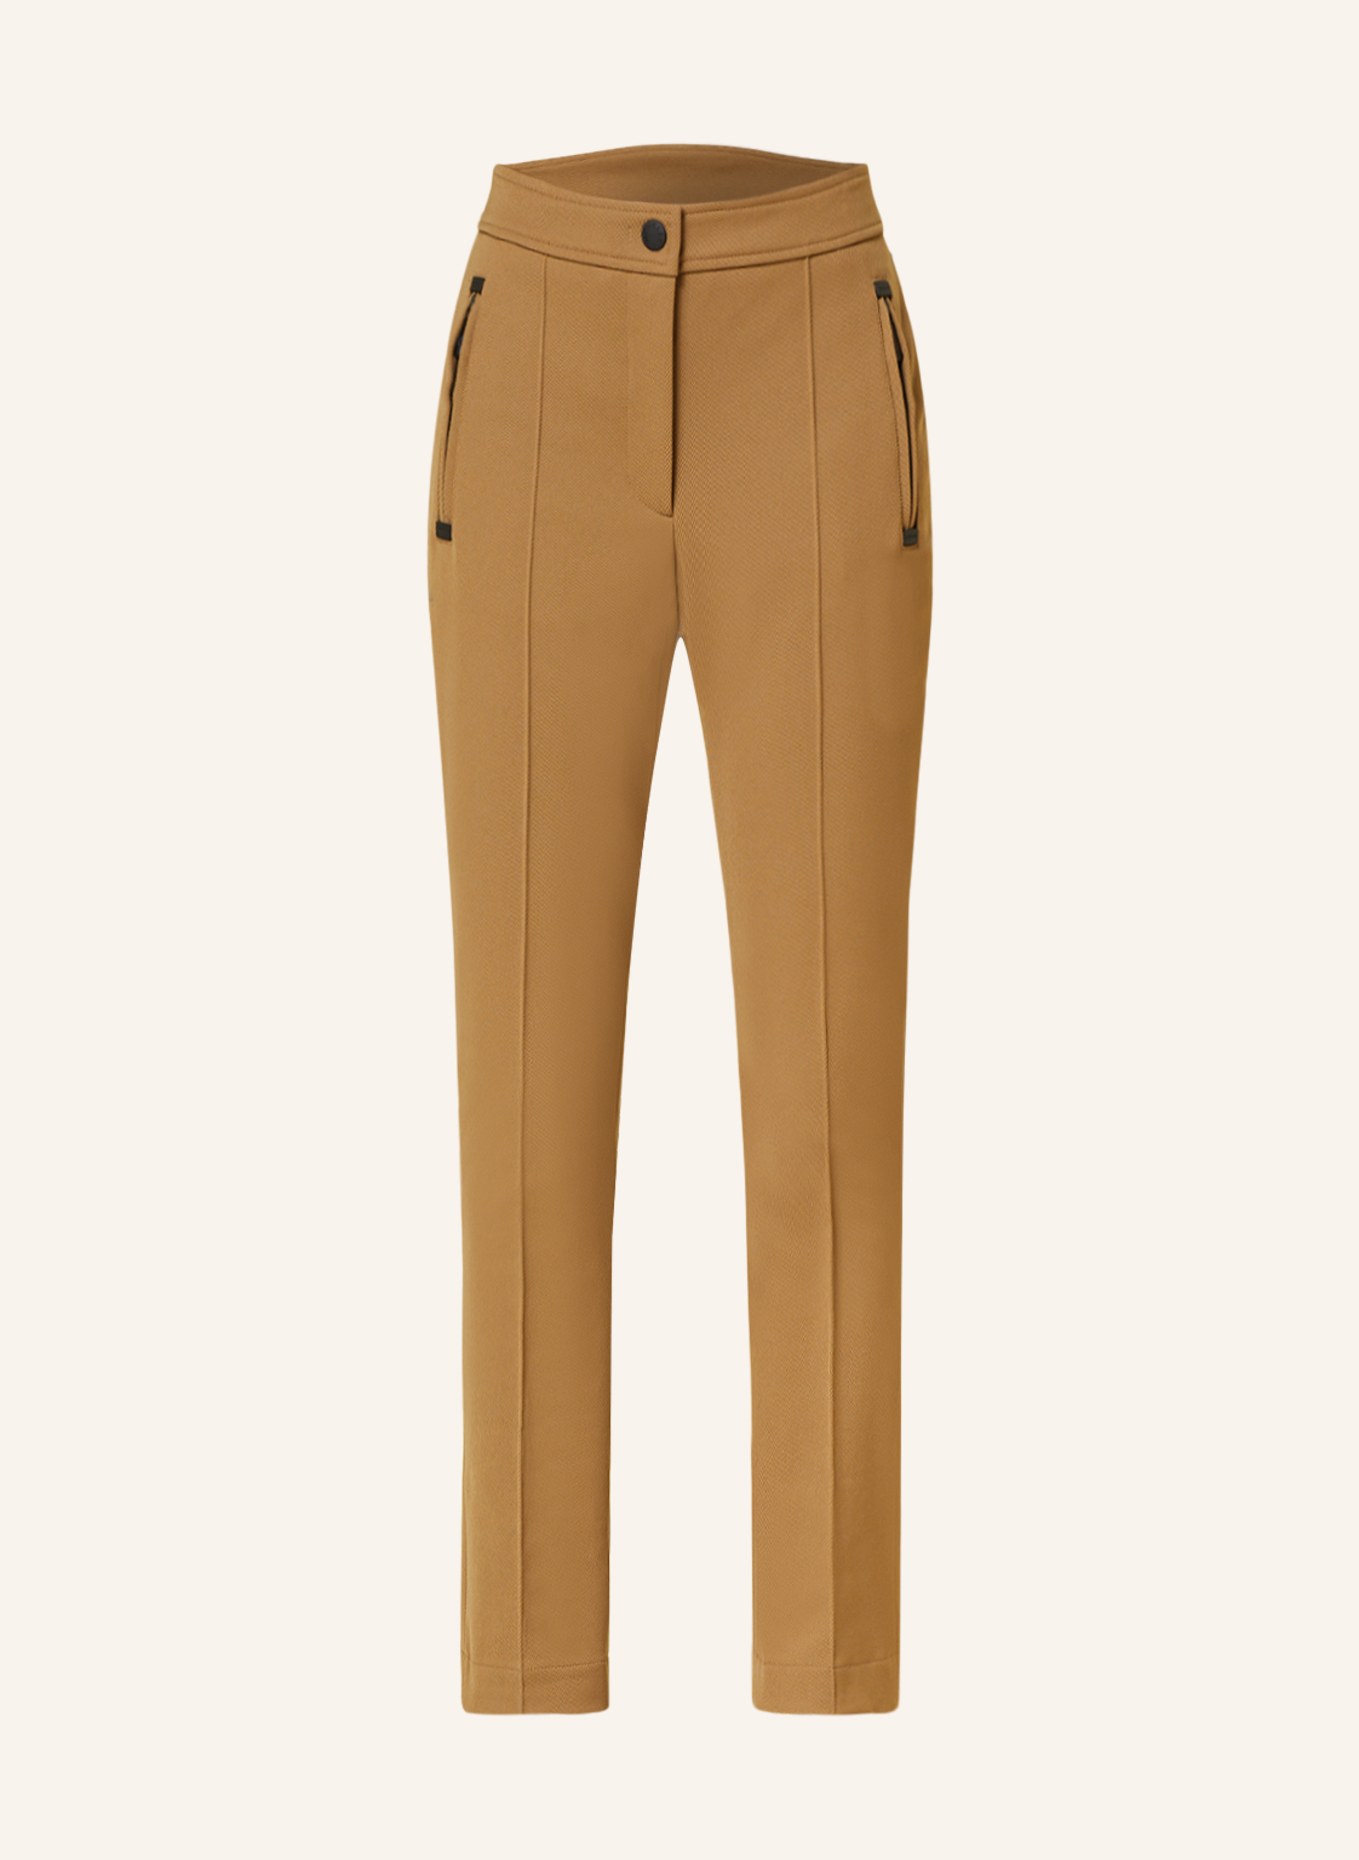 MONCLER GRENOBLE Ski pants, Color: BROWN (Image 1)